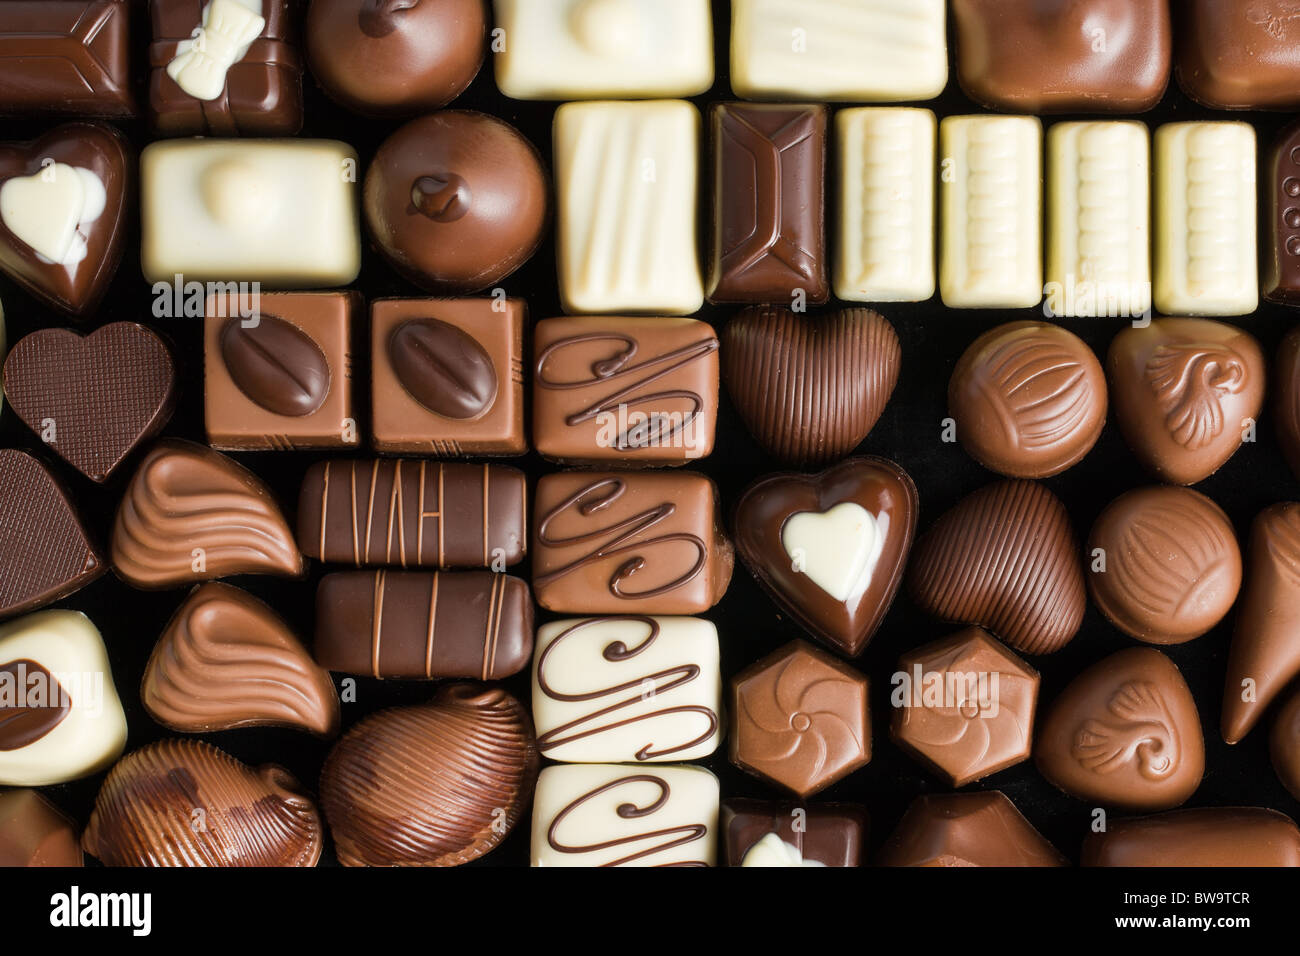 various chocolate pralines Stock Photo